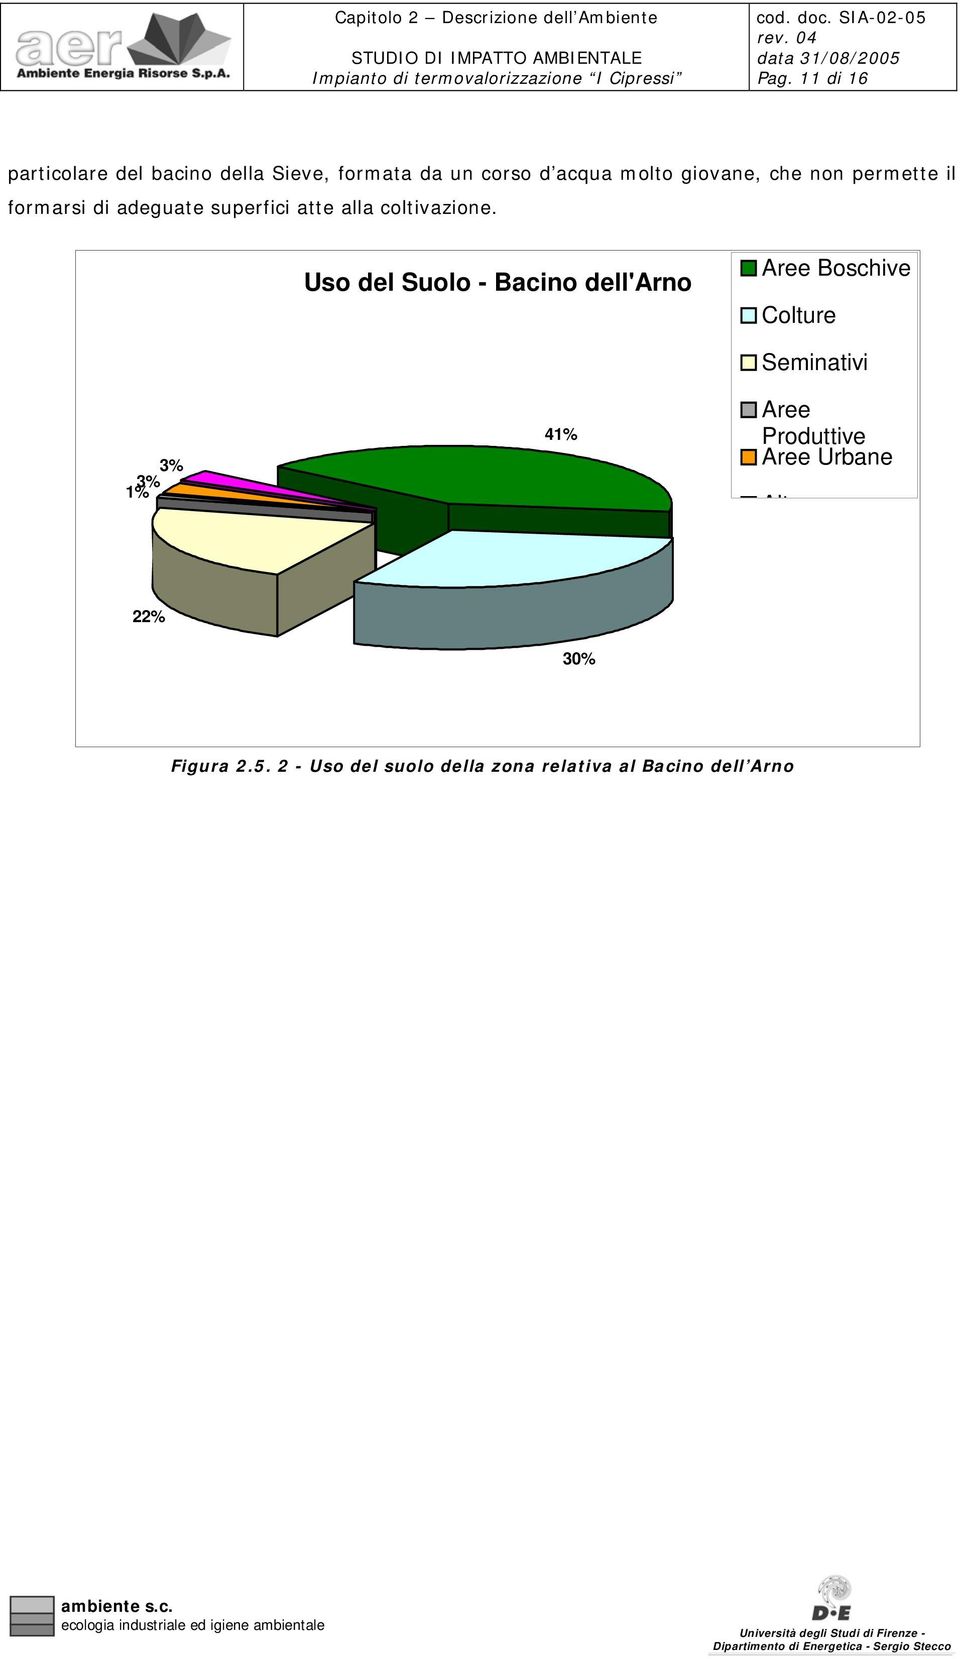 Uso del Suolo - Bacino dell'arno Aree Boschive Colture 1% 3%3% 41% Seminativi Aree